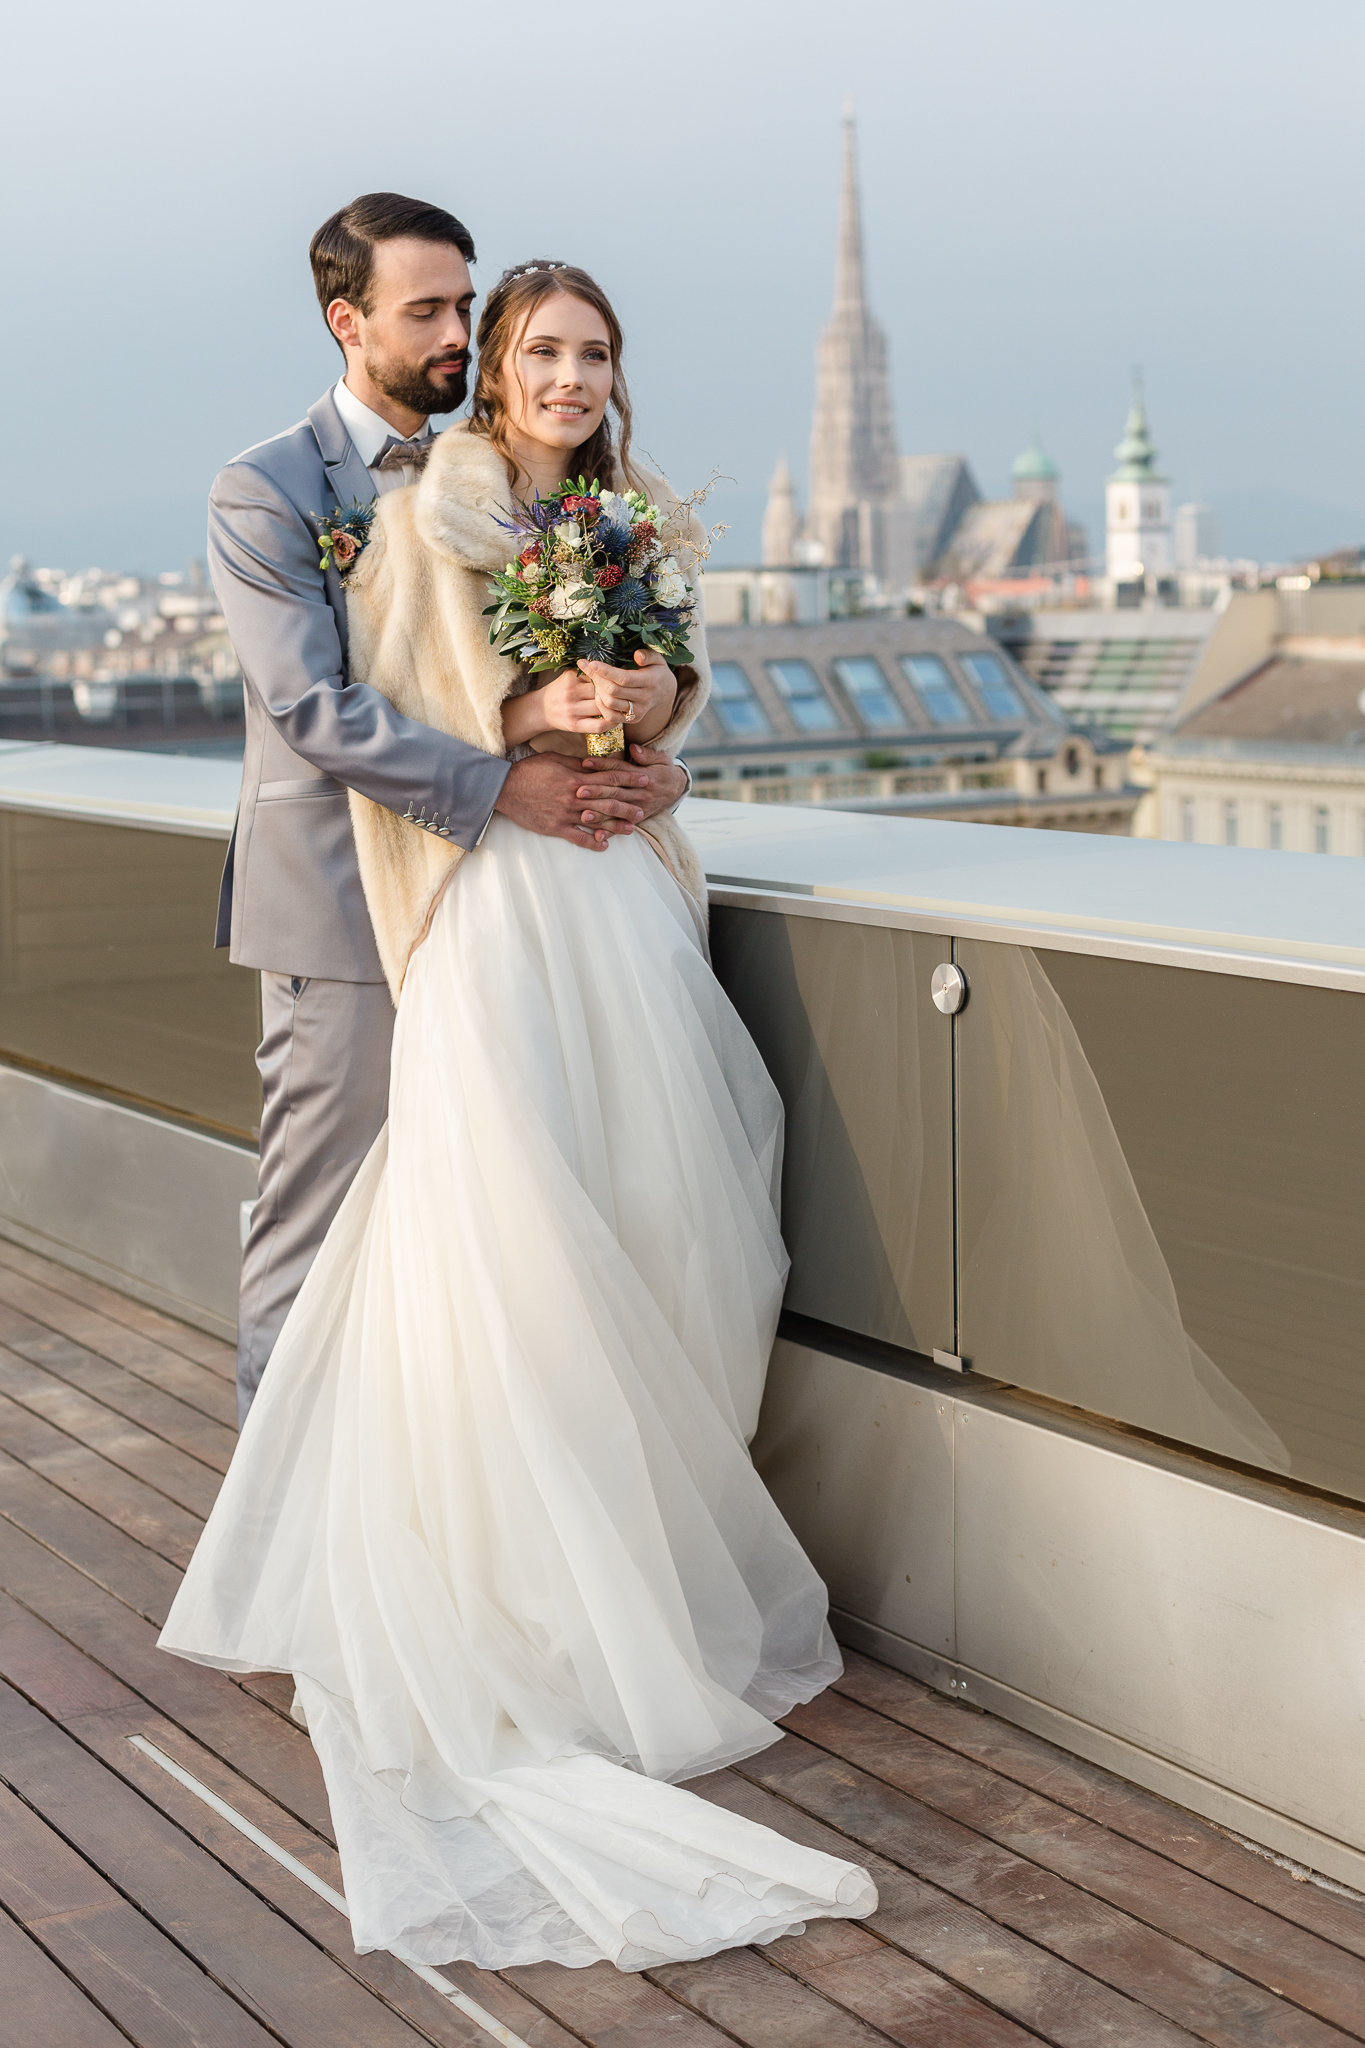 Rooftop wedding in Vienna Ritz Carlton